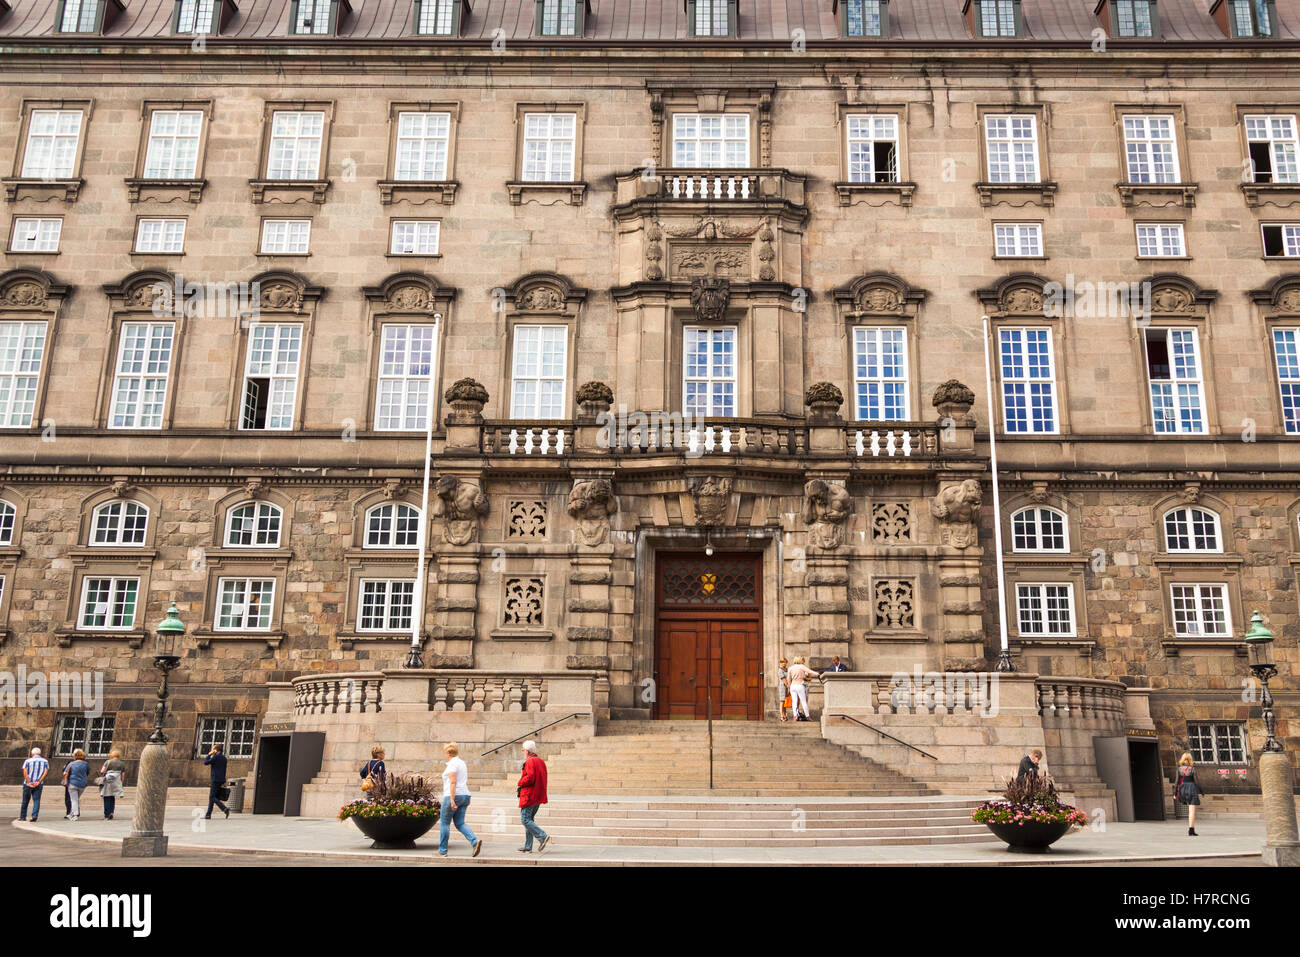 Le bâtiment du Parlement, Christiansborg Palace, Slotsholmen, Copenhague, Danemark Banque D'Images